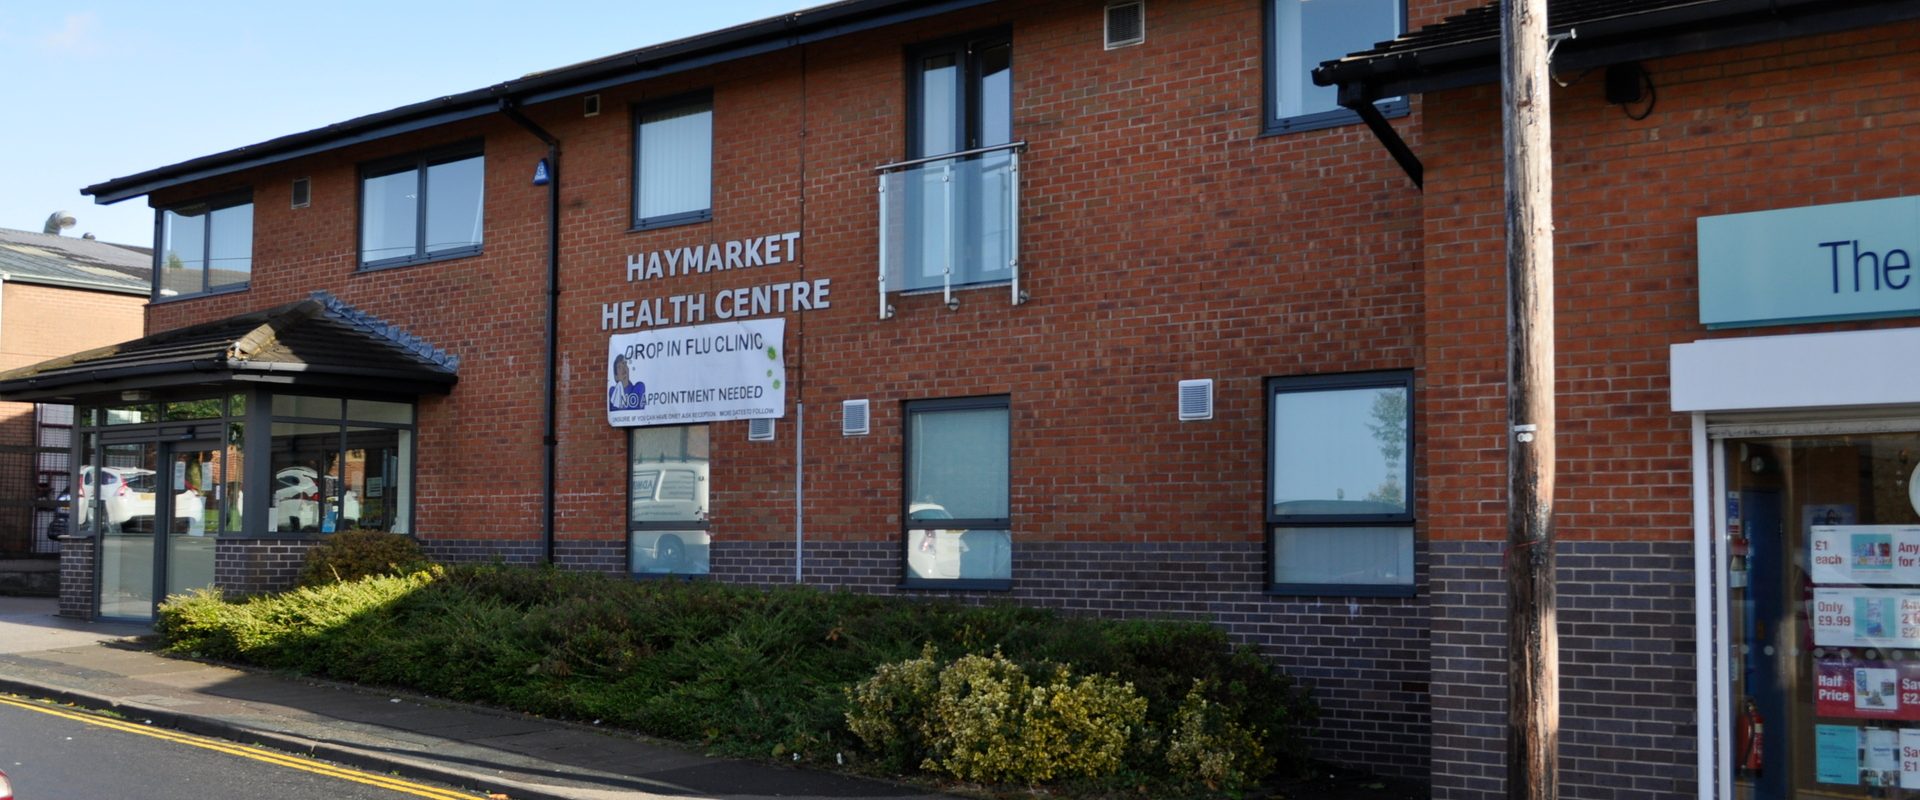 Haymarket Health Centre